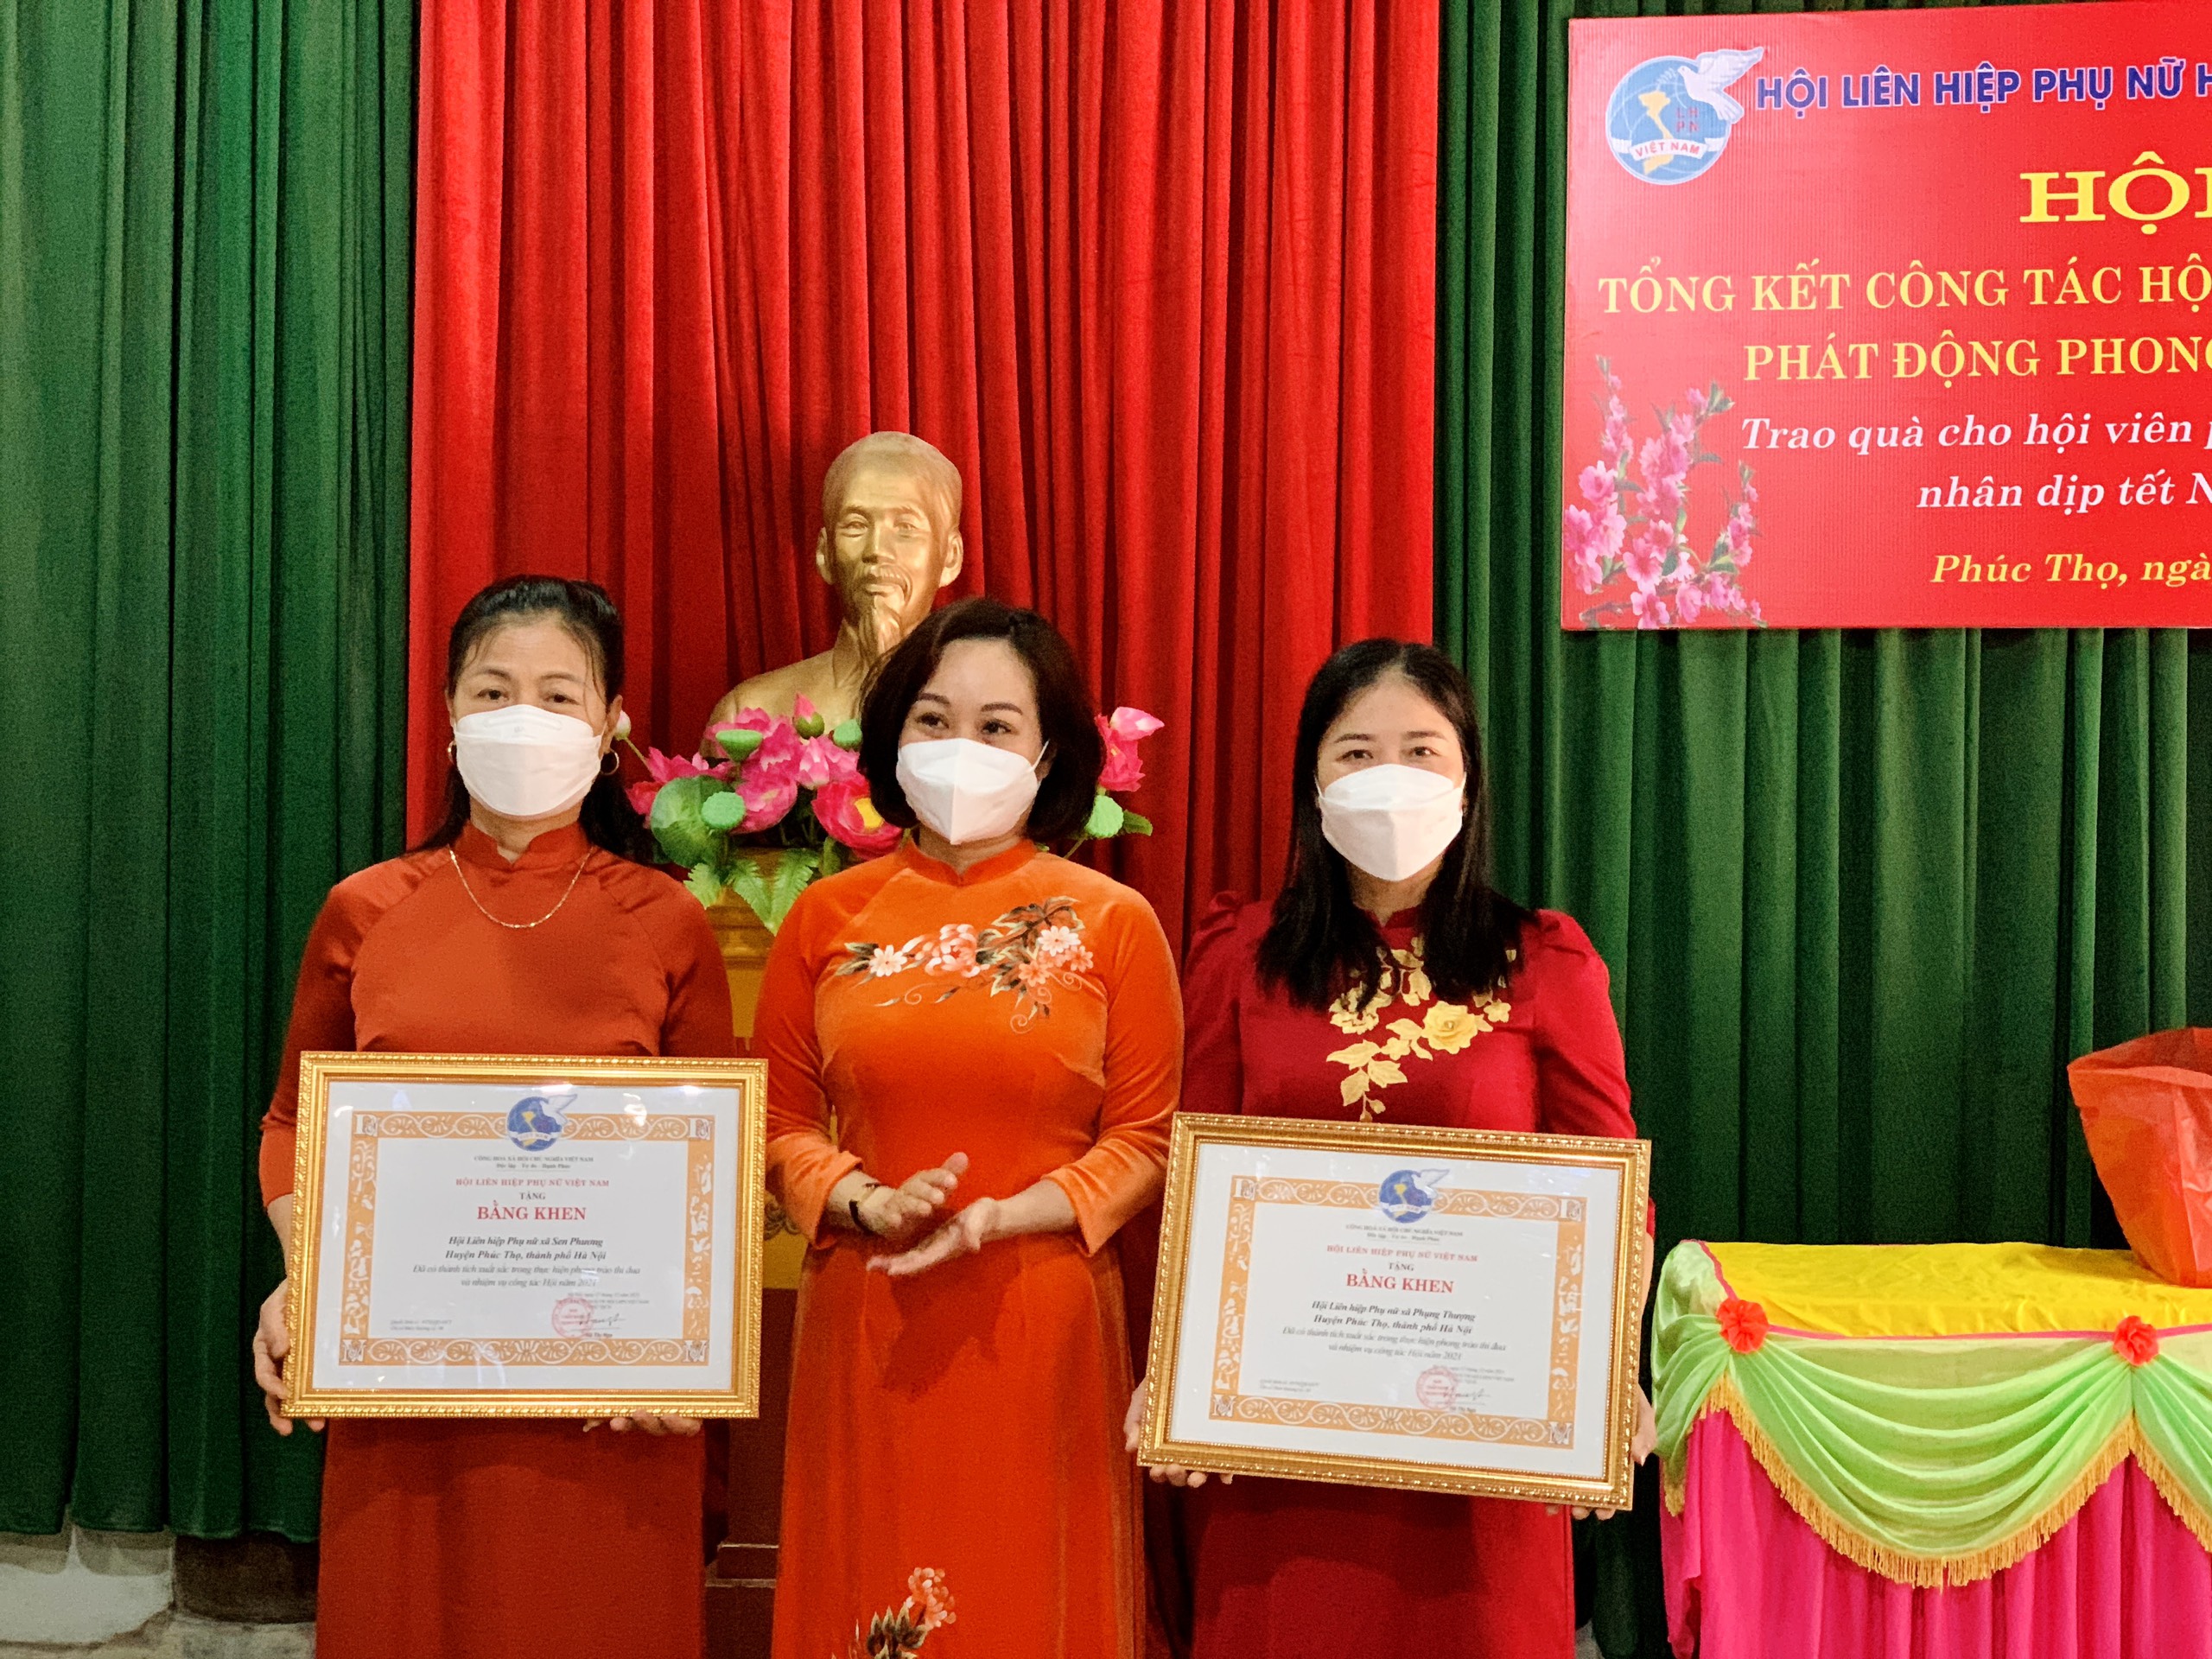 Lãnh đạo Hội LHPN TP Hà Nội và huyện Phúc Thọ tằng bằng khen cho các tập thể, cá nhân có thành tích xuất sắc trong công tác phụ nữ năm 2021